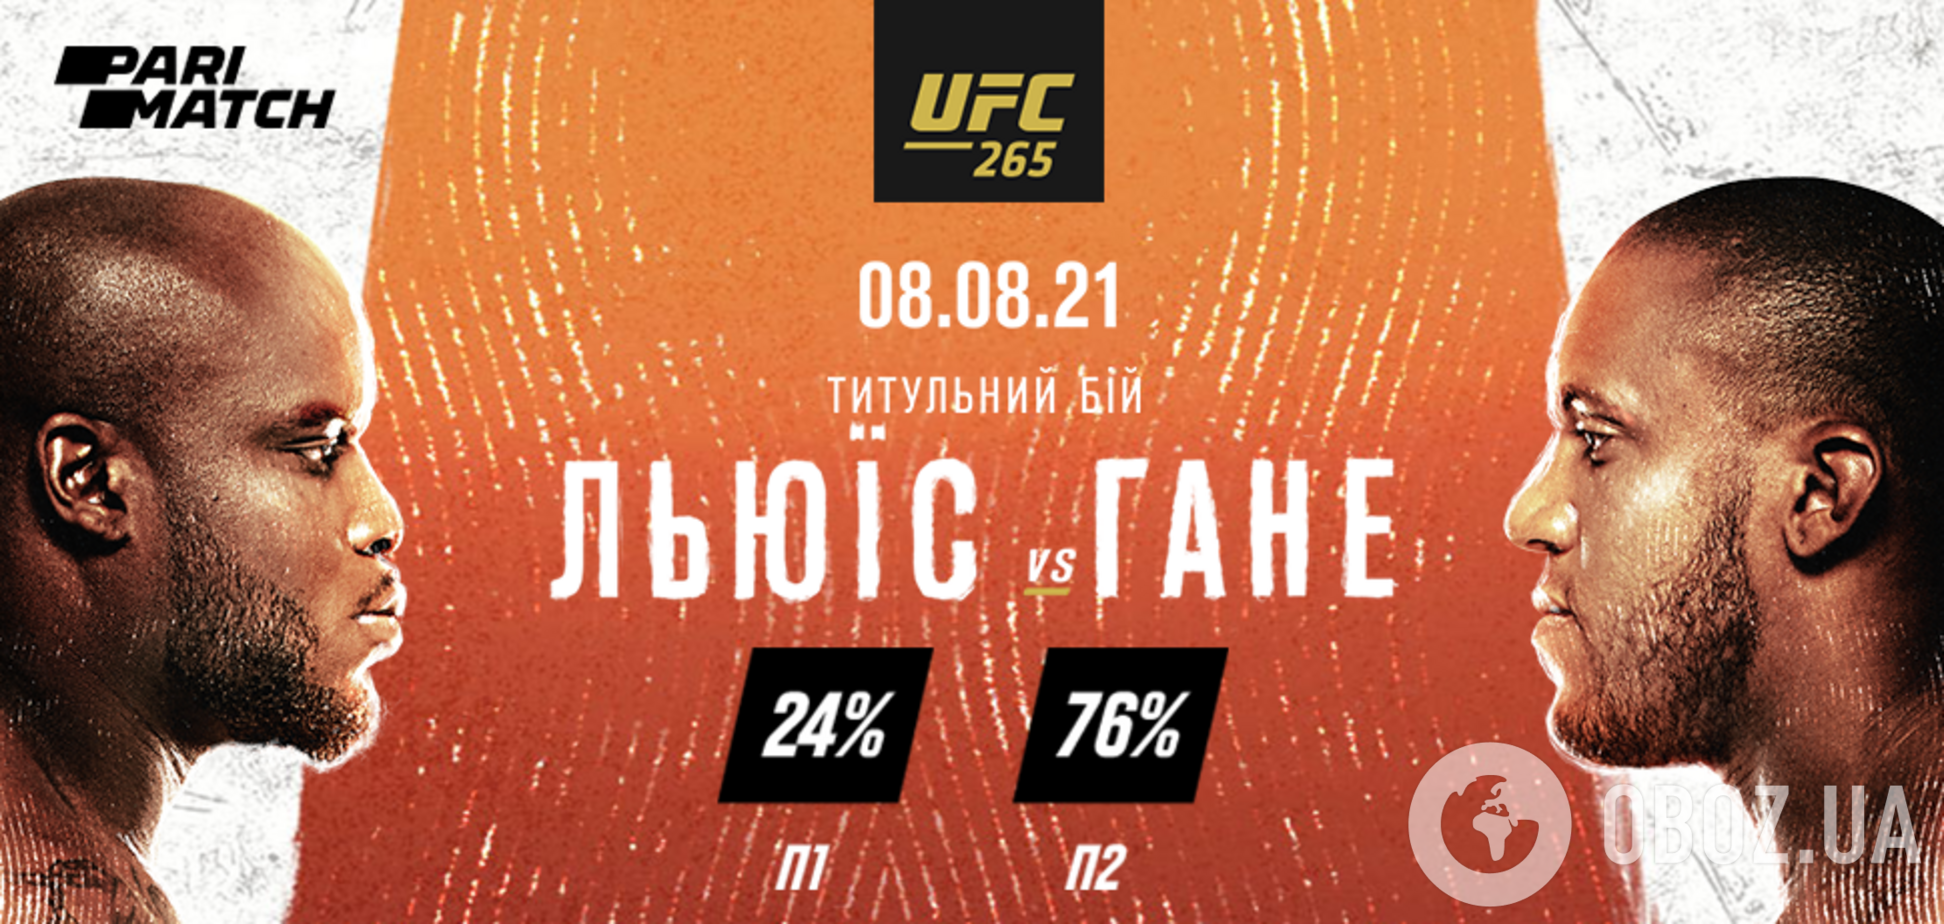 UFC 265: прогноз на главный бой Льюис – Гане